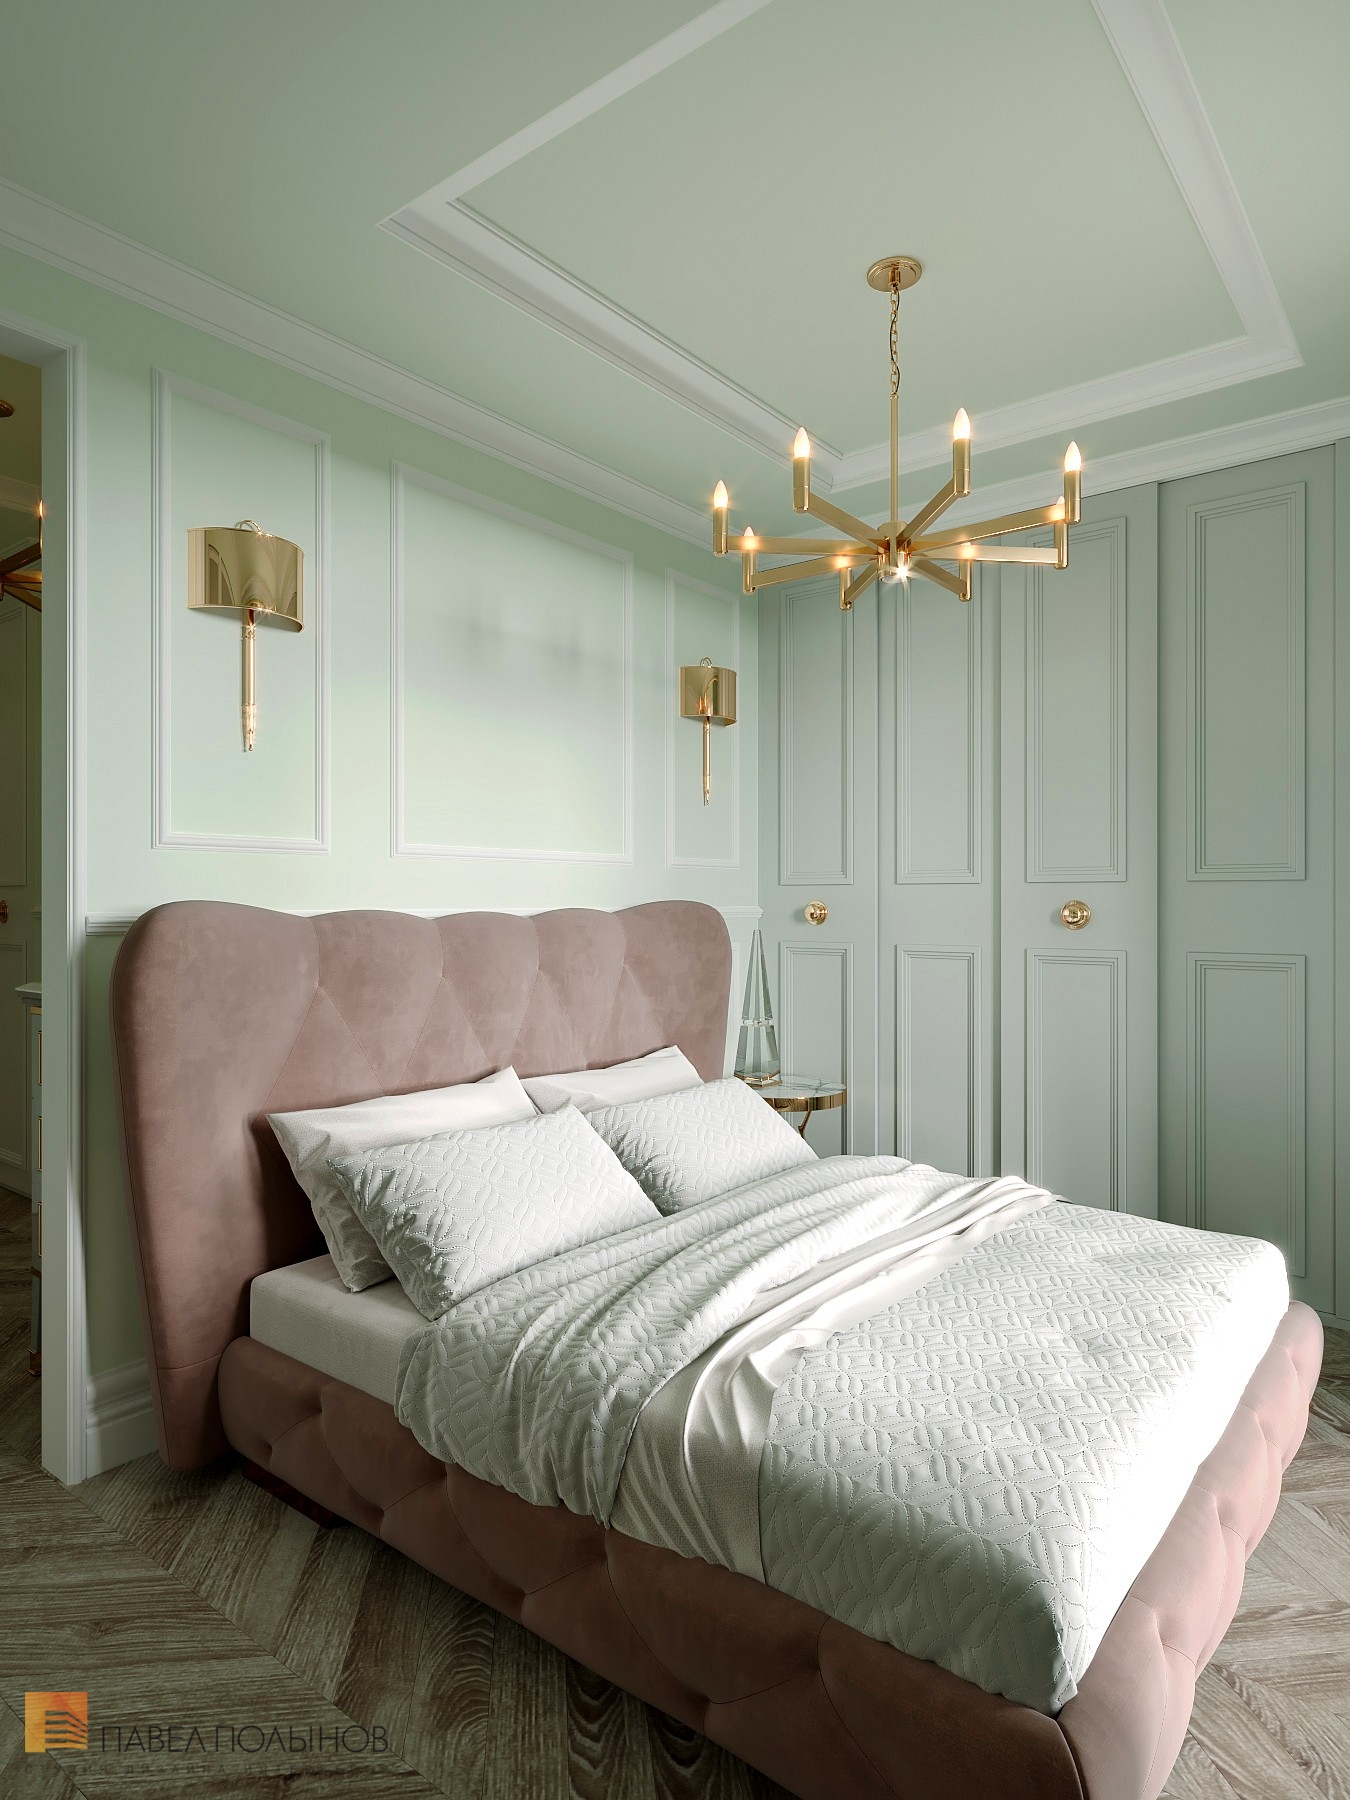 Фото спальня из проекта «Интерьер квартиры в стиле неоклассика в ЖК «The Residence», 219 кв.м.»